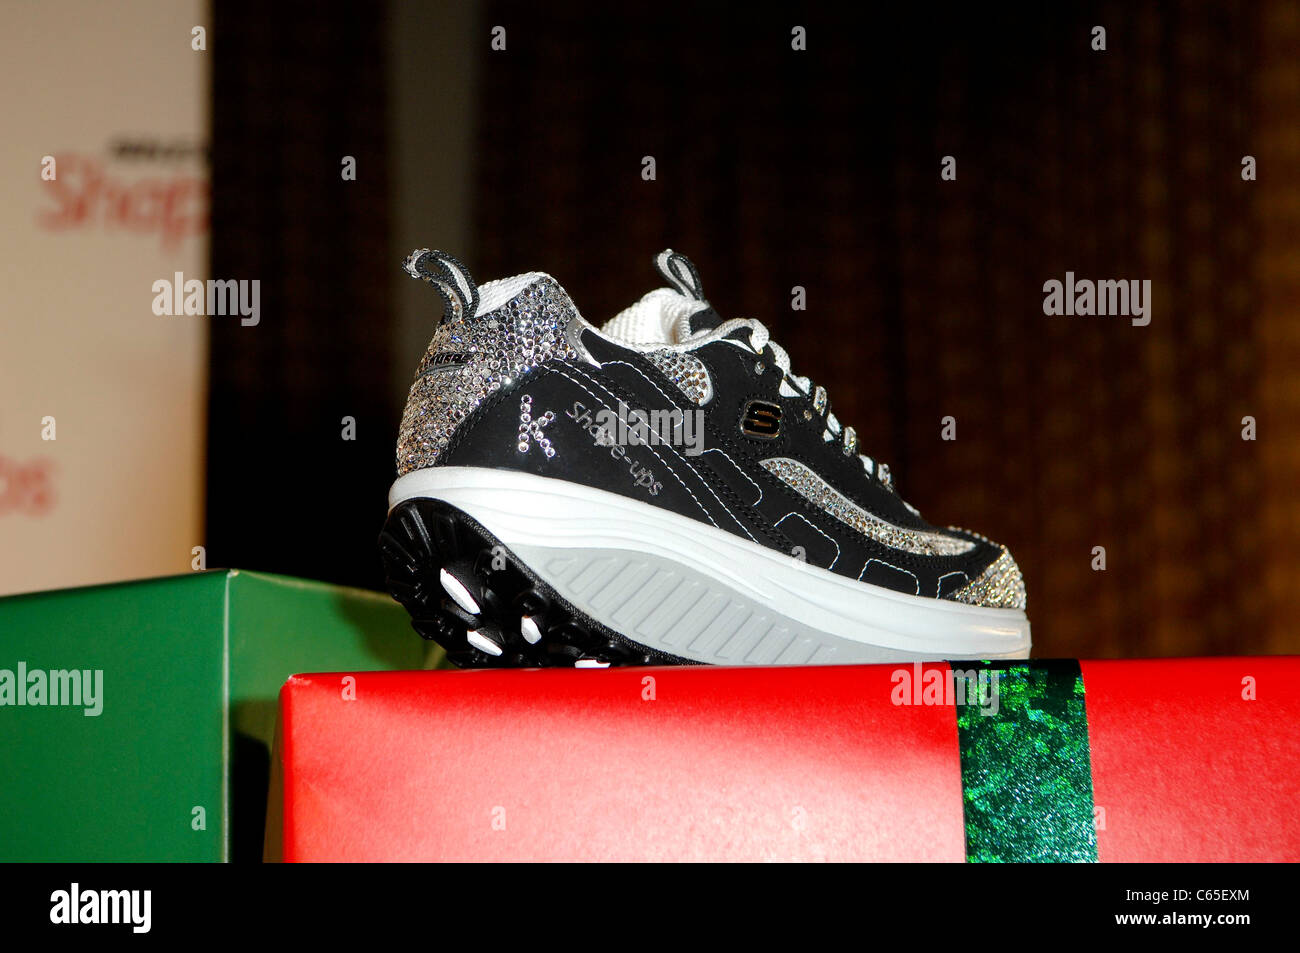 Nuevos zapatos skechers fotografías e imágenes alta resolución - Alamy